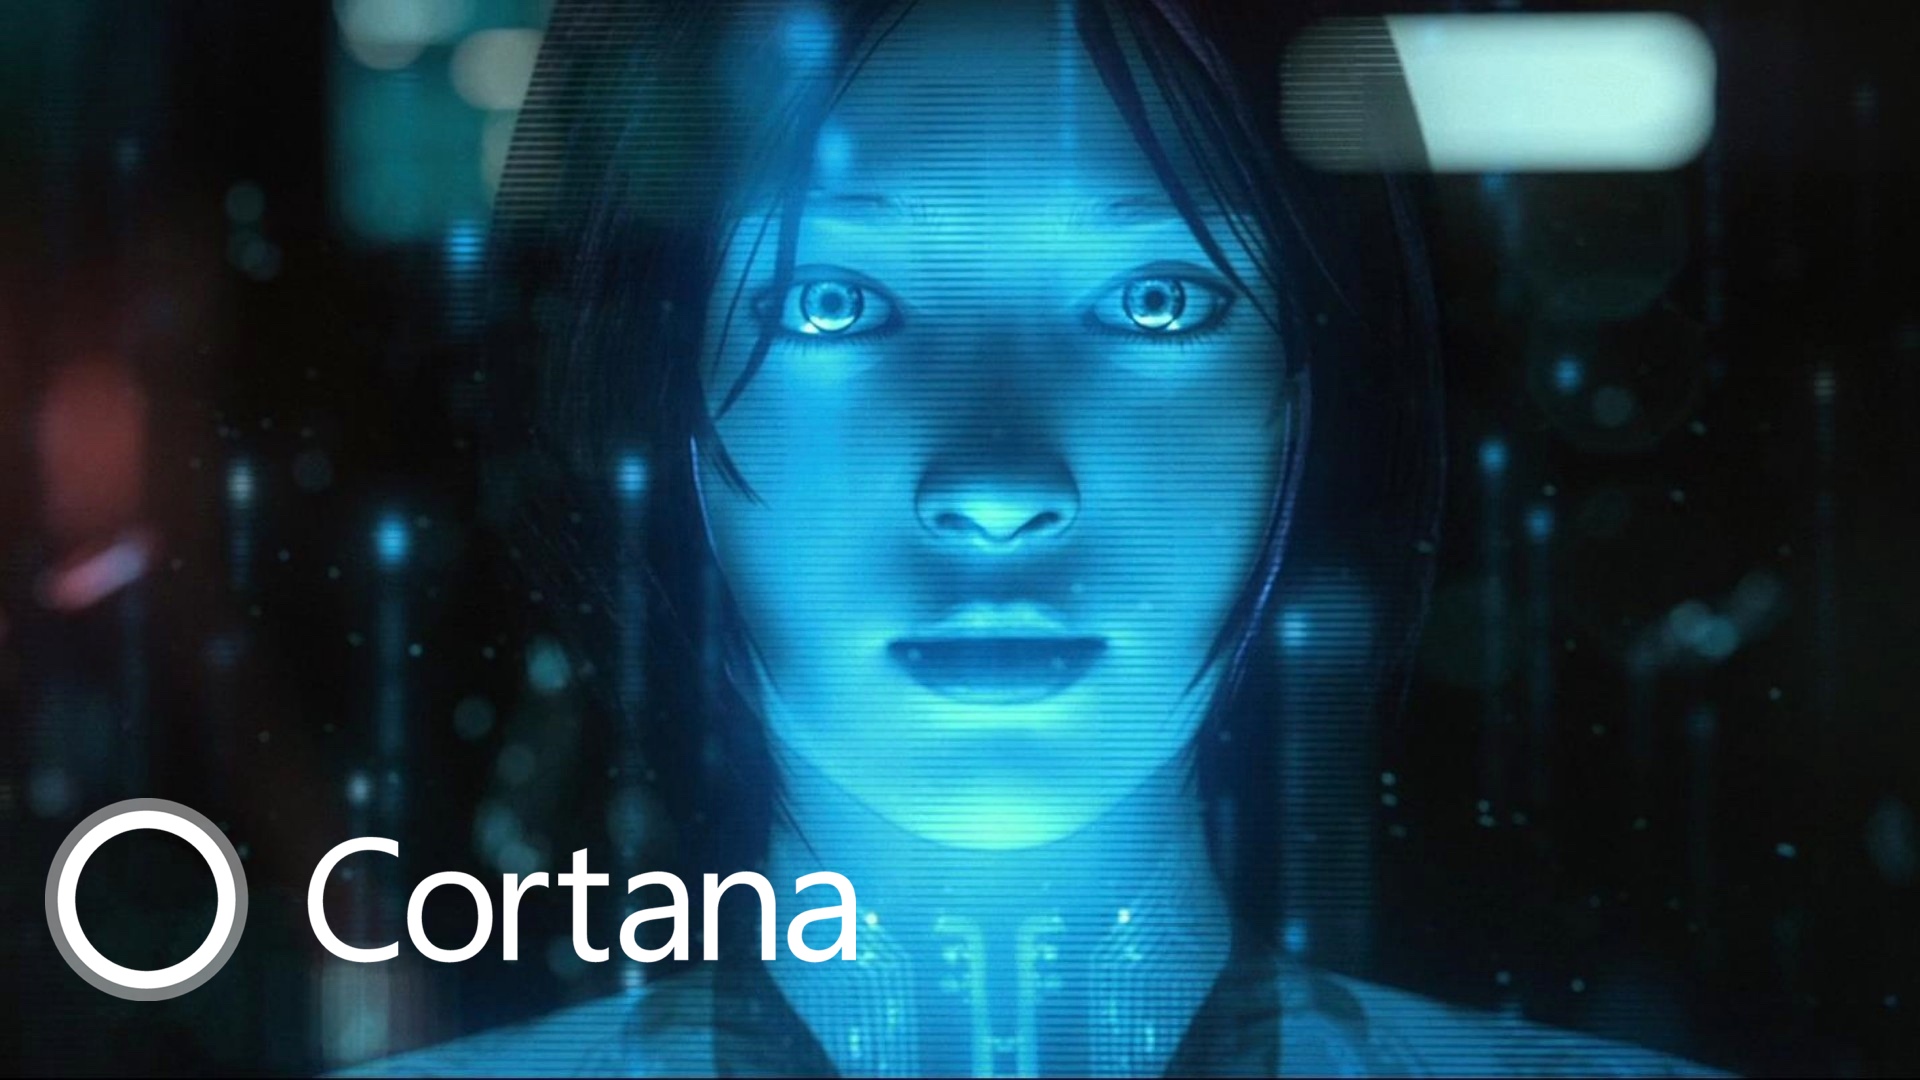 Cortana - Virtual AI assistant